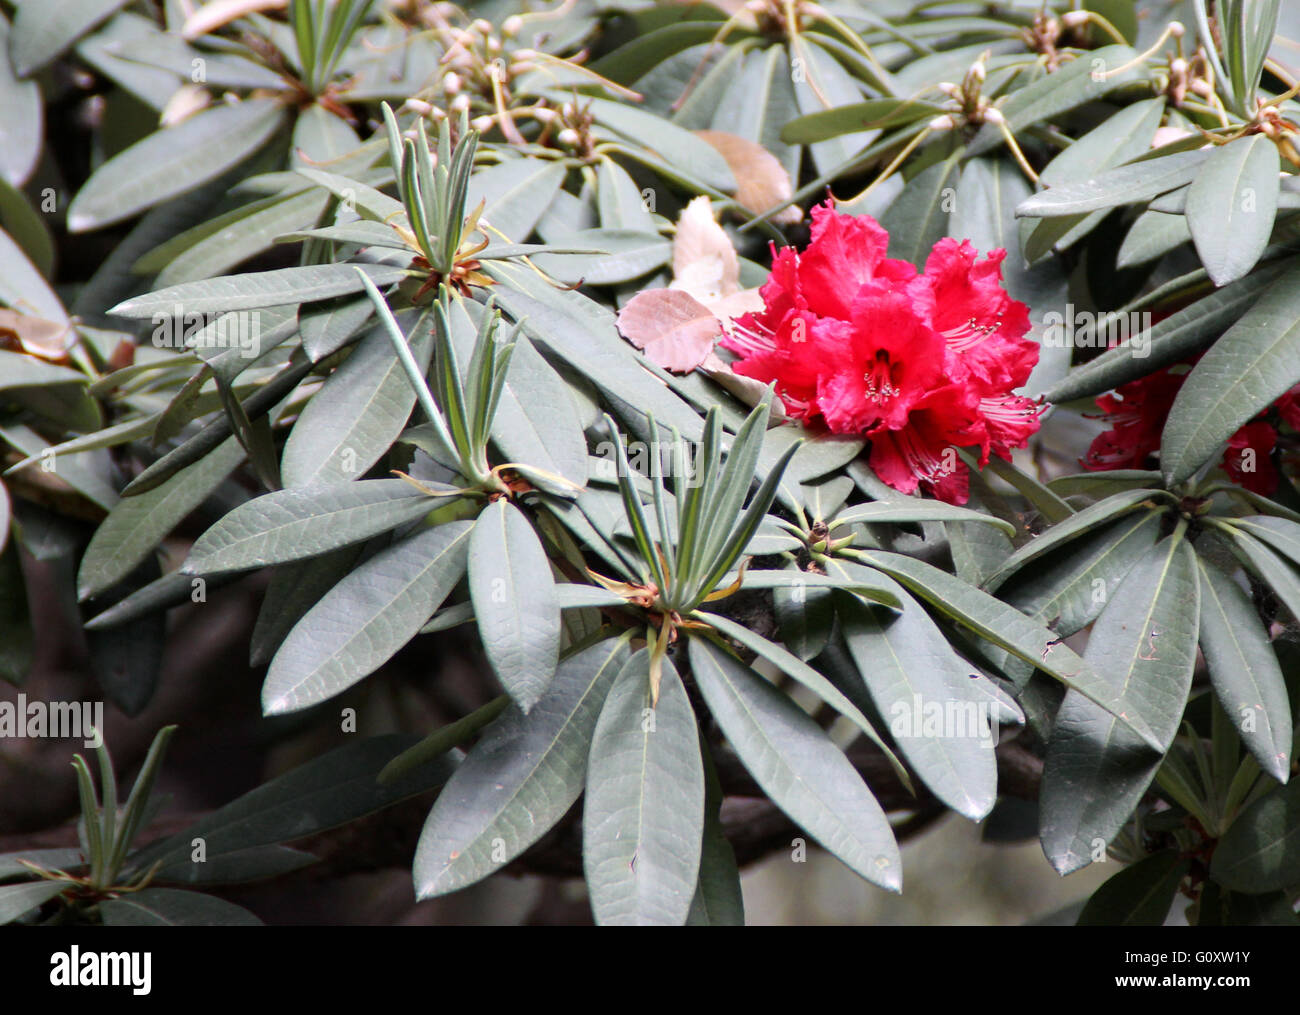 Rhododendron Arboreum Baum Rhododendron, immergrüner Strauch oder kleiner Baum mit roten Blüten in Büscheln Stockfoto